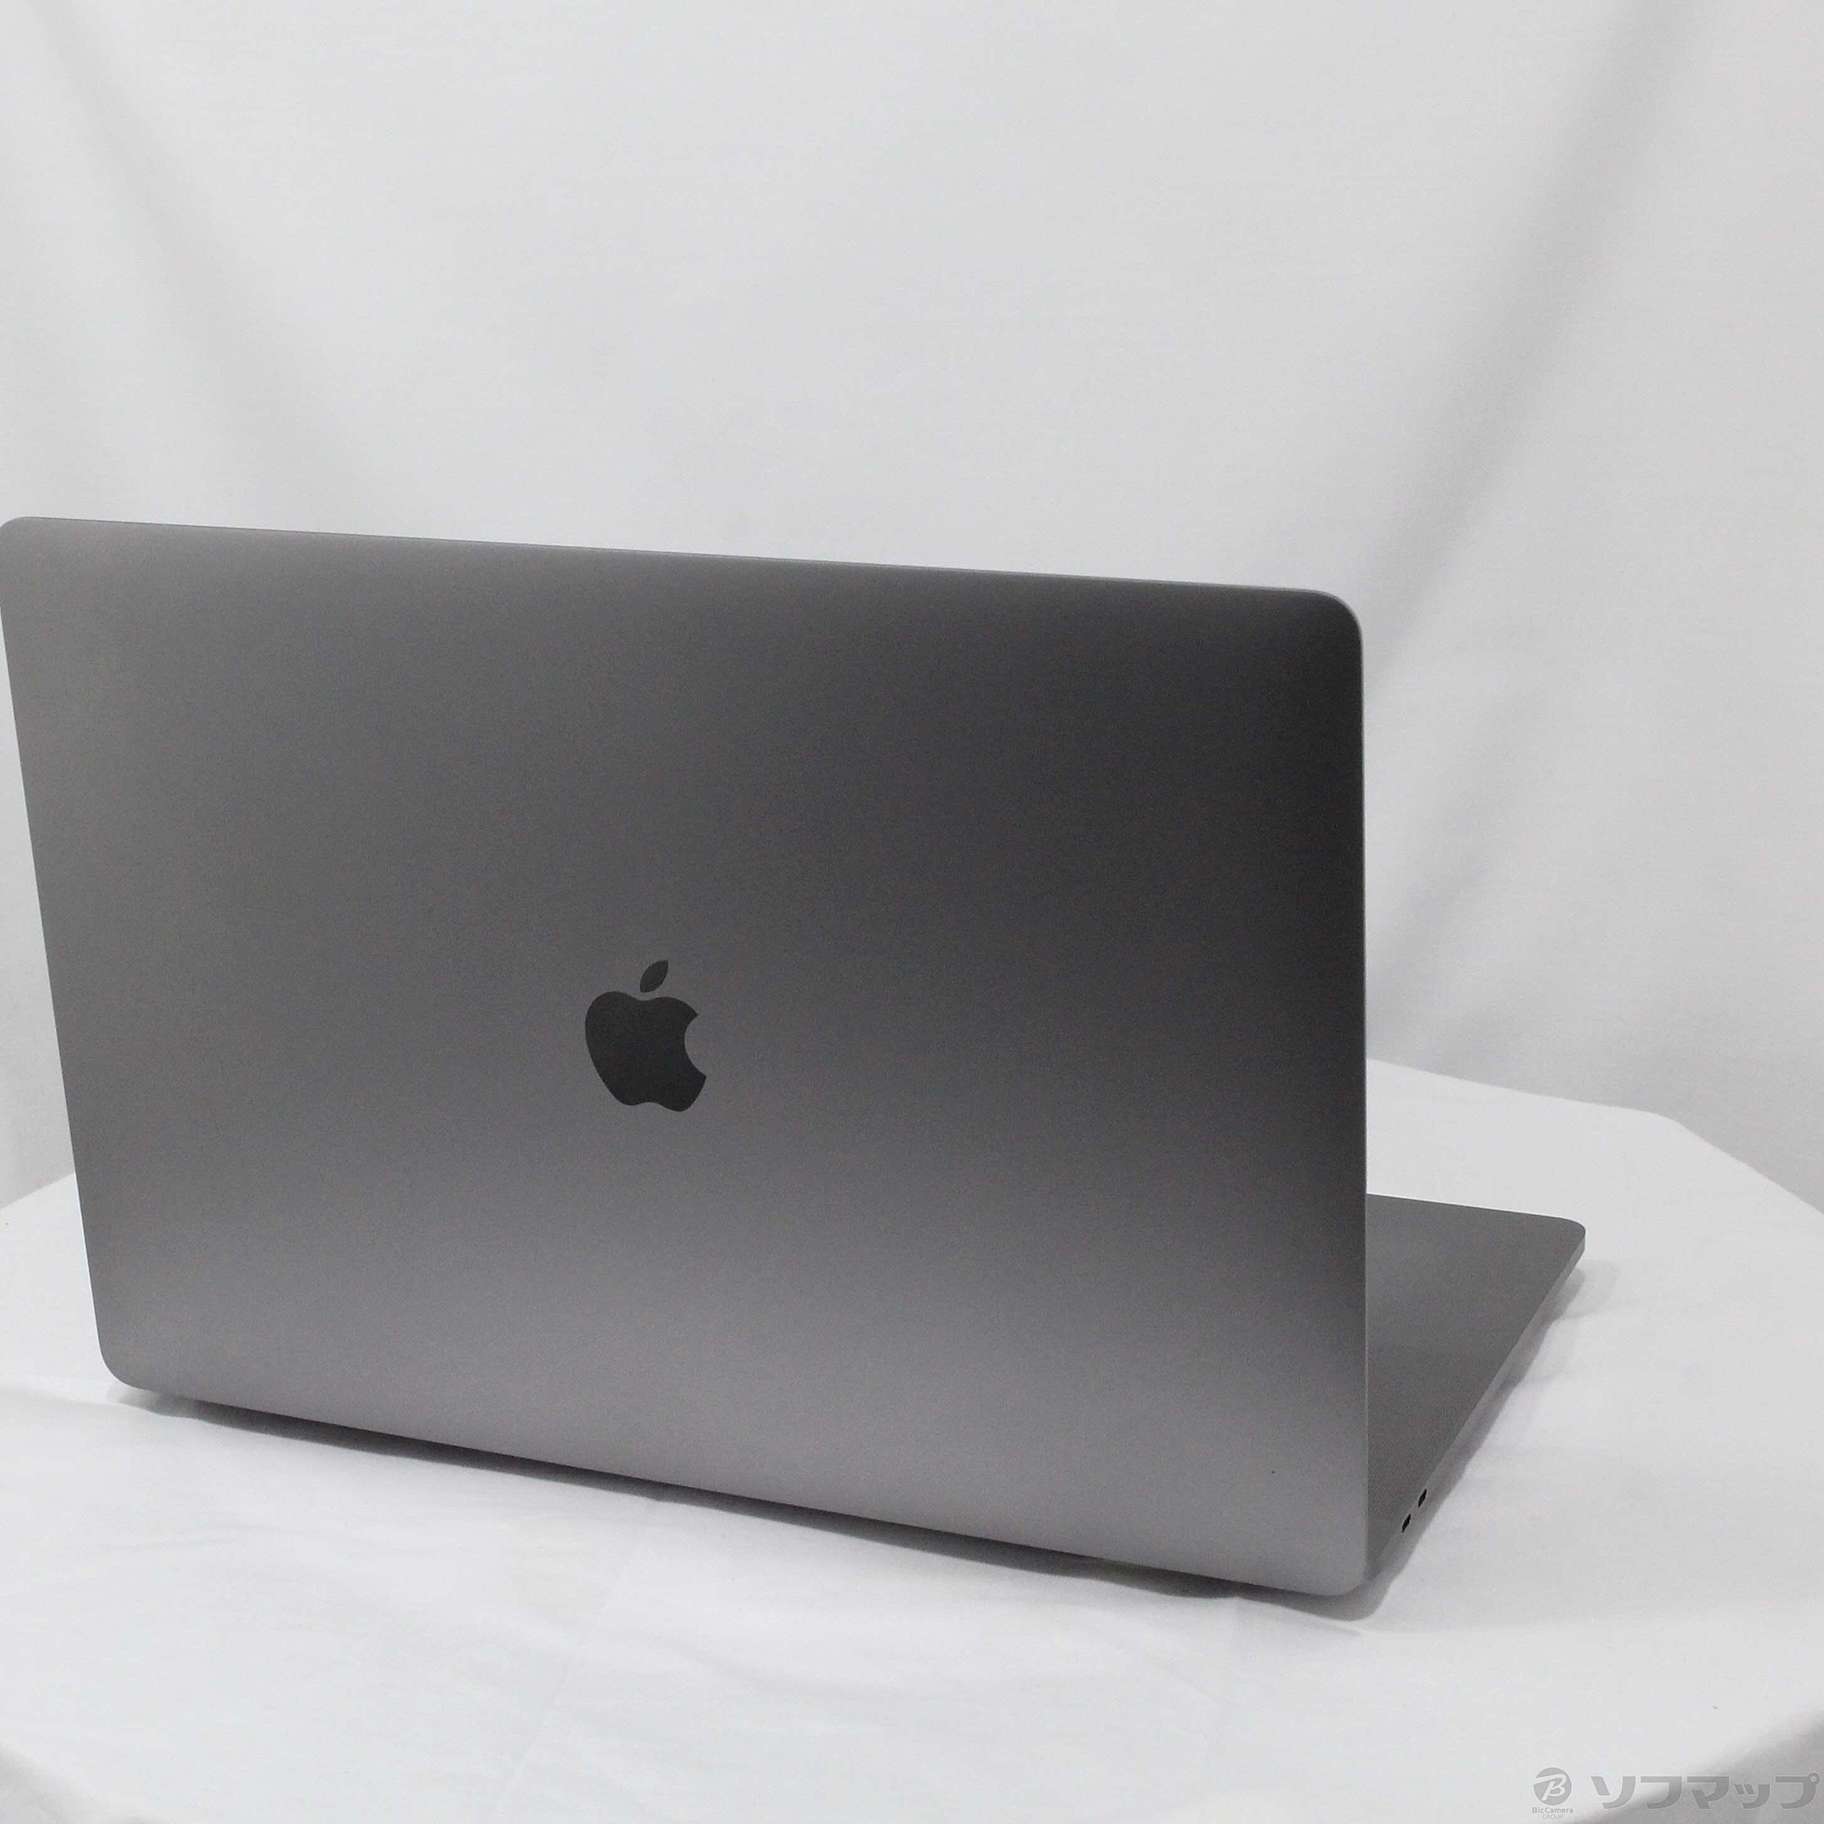 MacBook Pro MV902J/A 2019モデル 15インチ - ノートPC - equipos ...